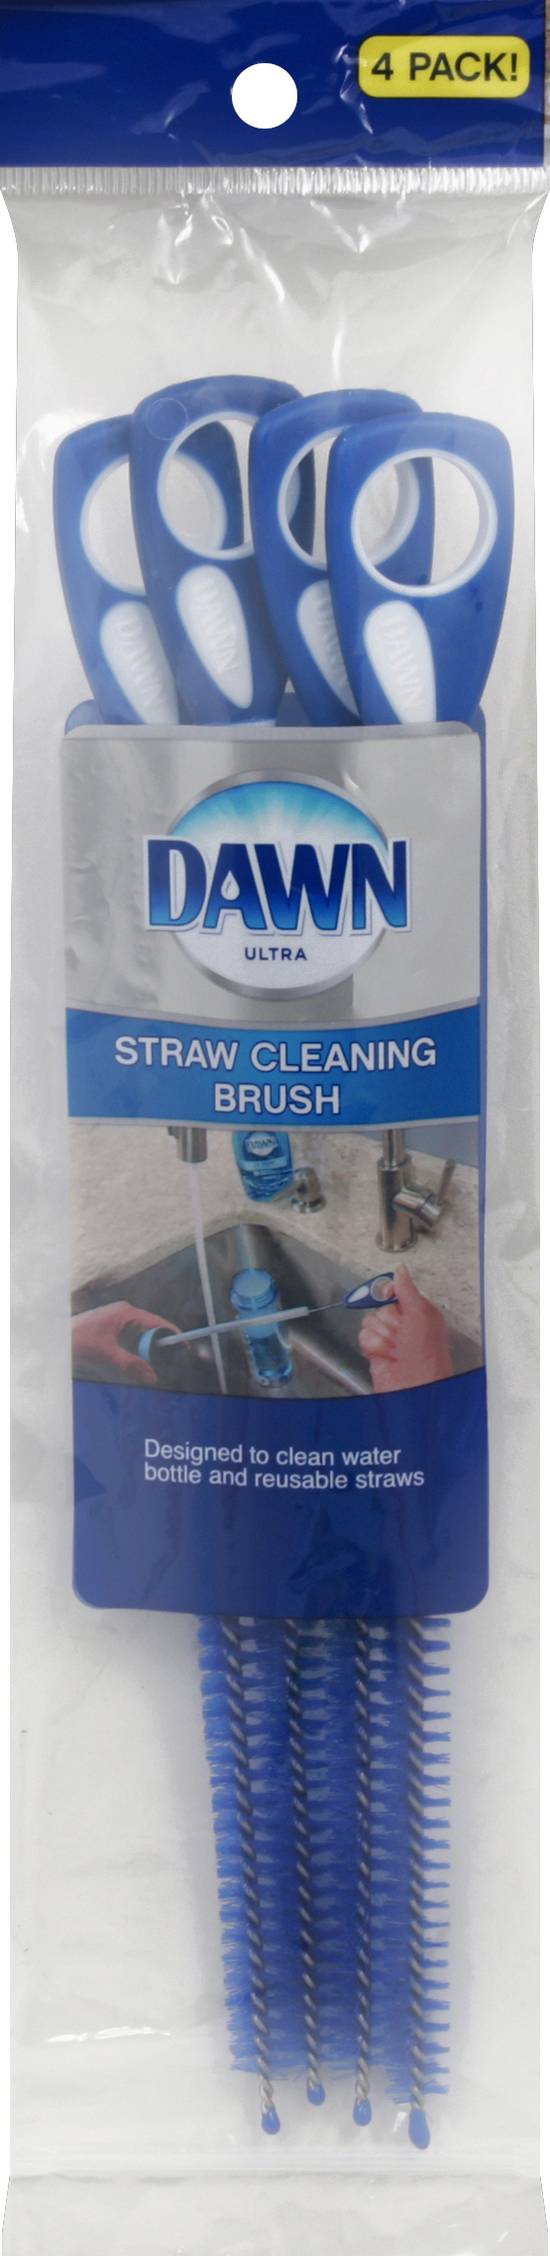 Dawn Straw Cleaning Brush, 4 Pack - 4 brush